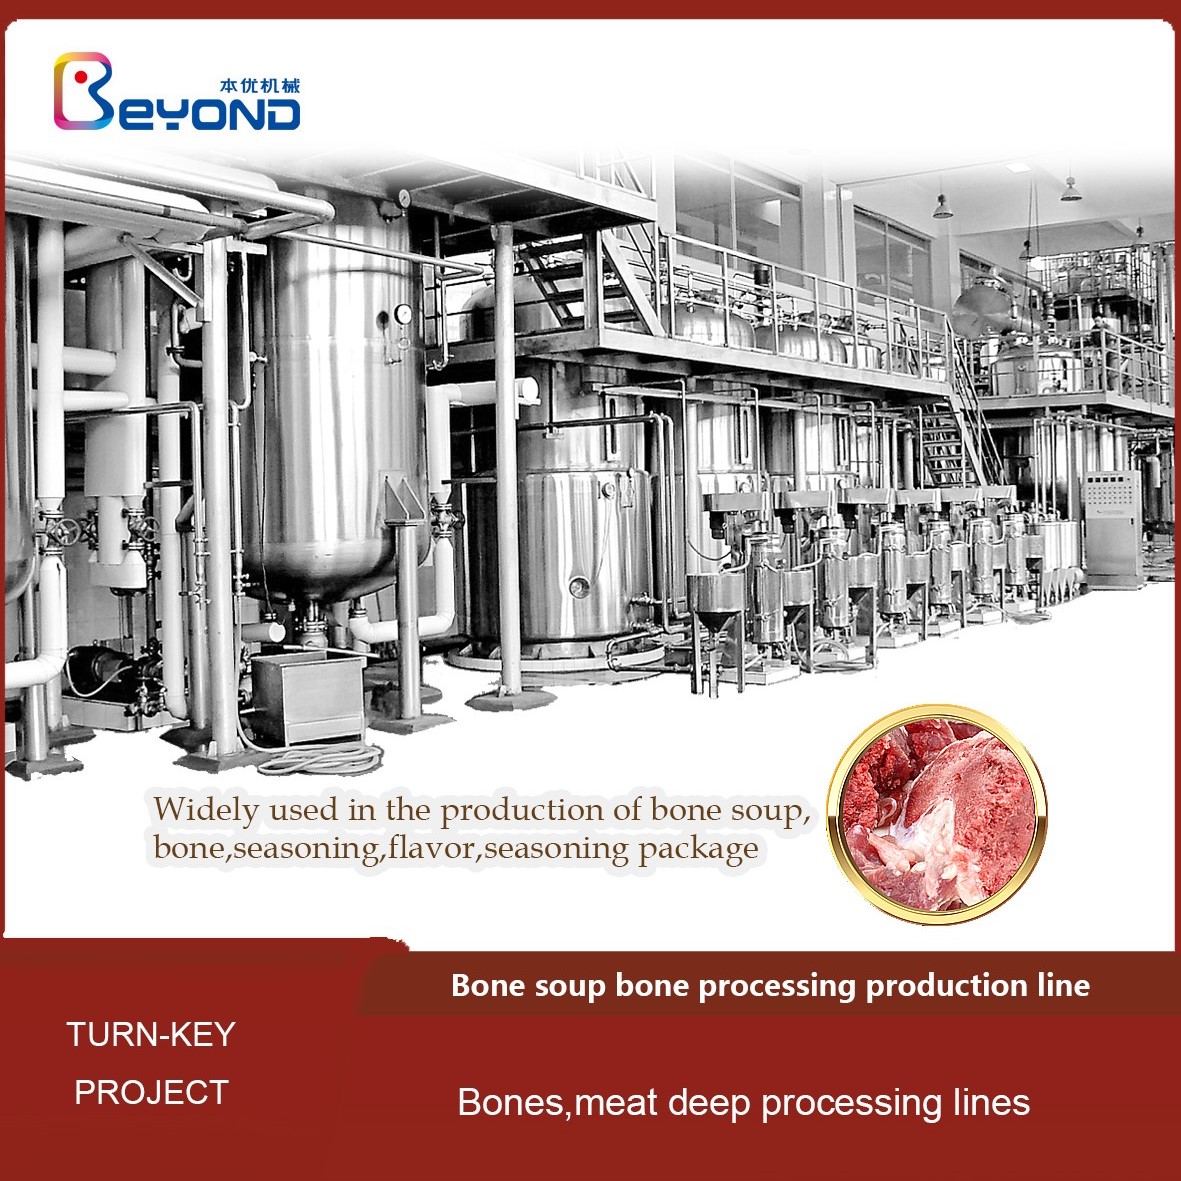 Bones soup processing production line